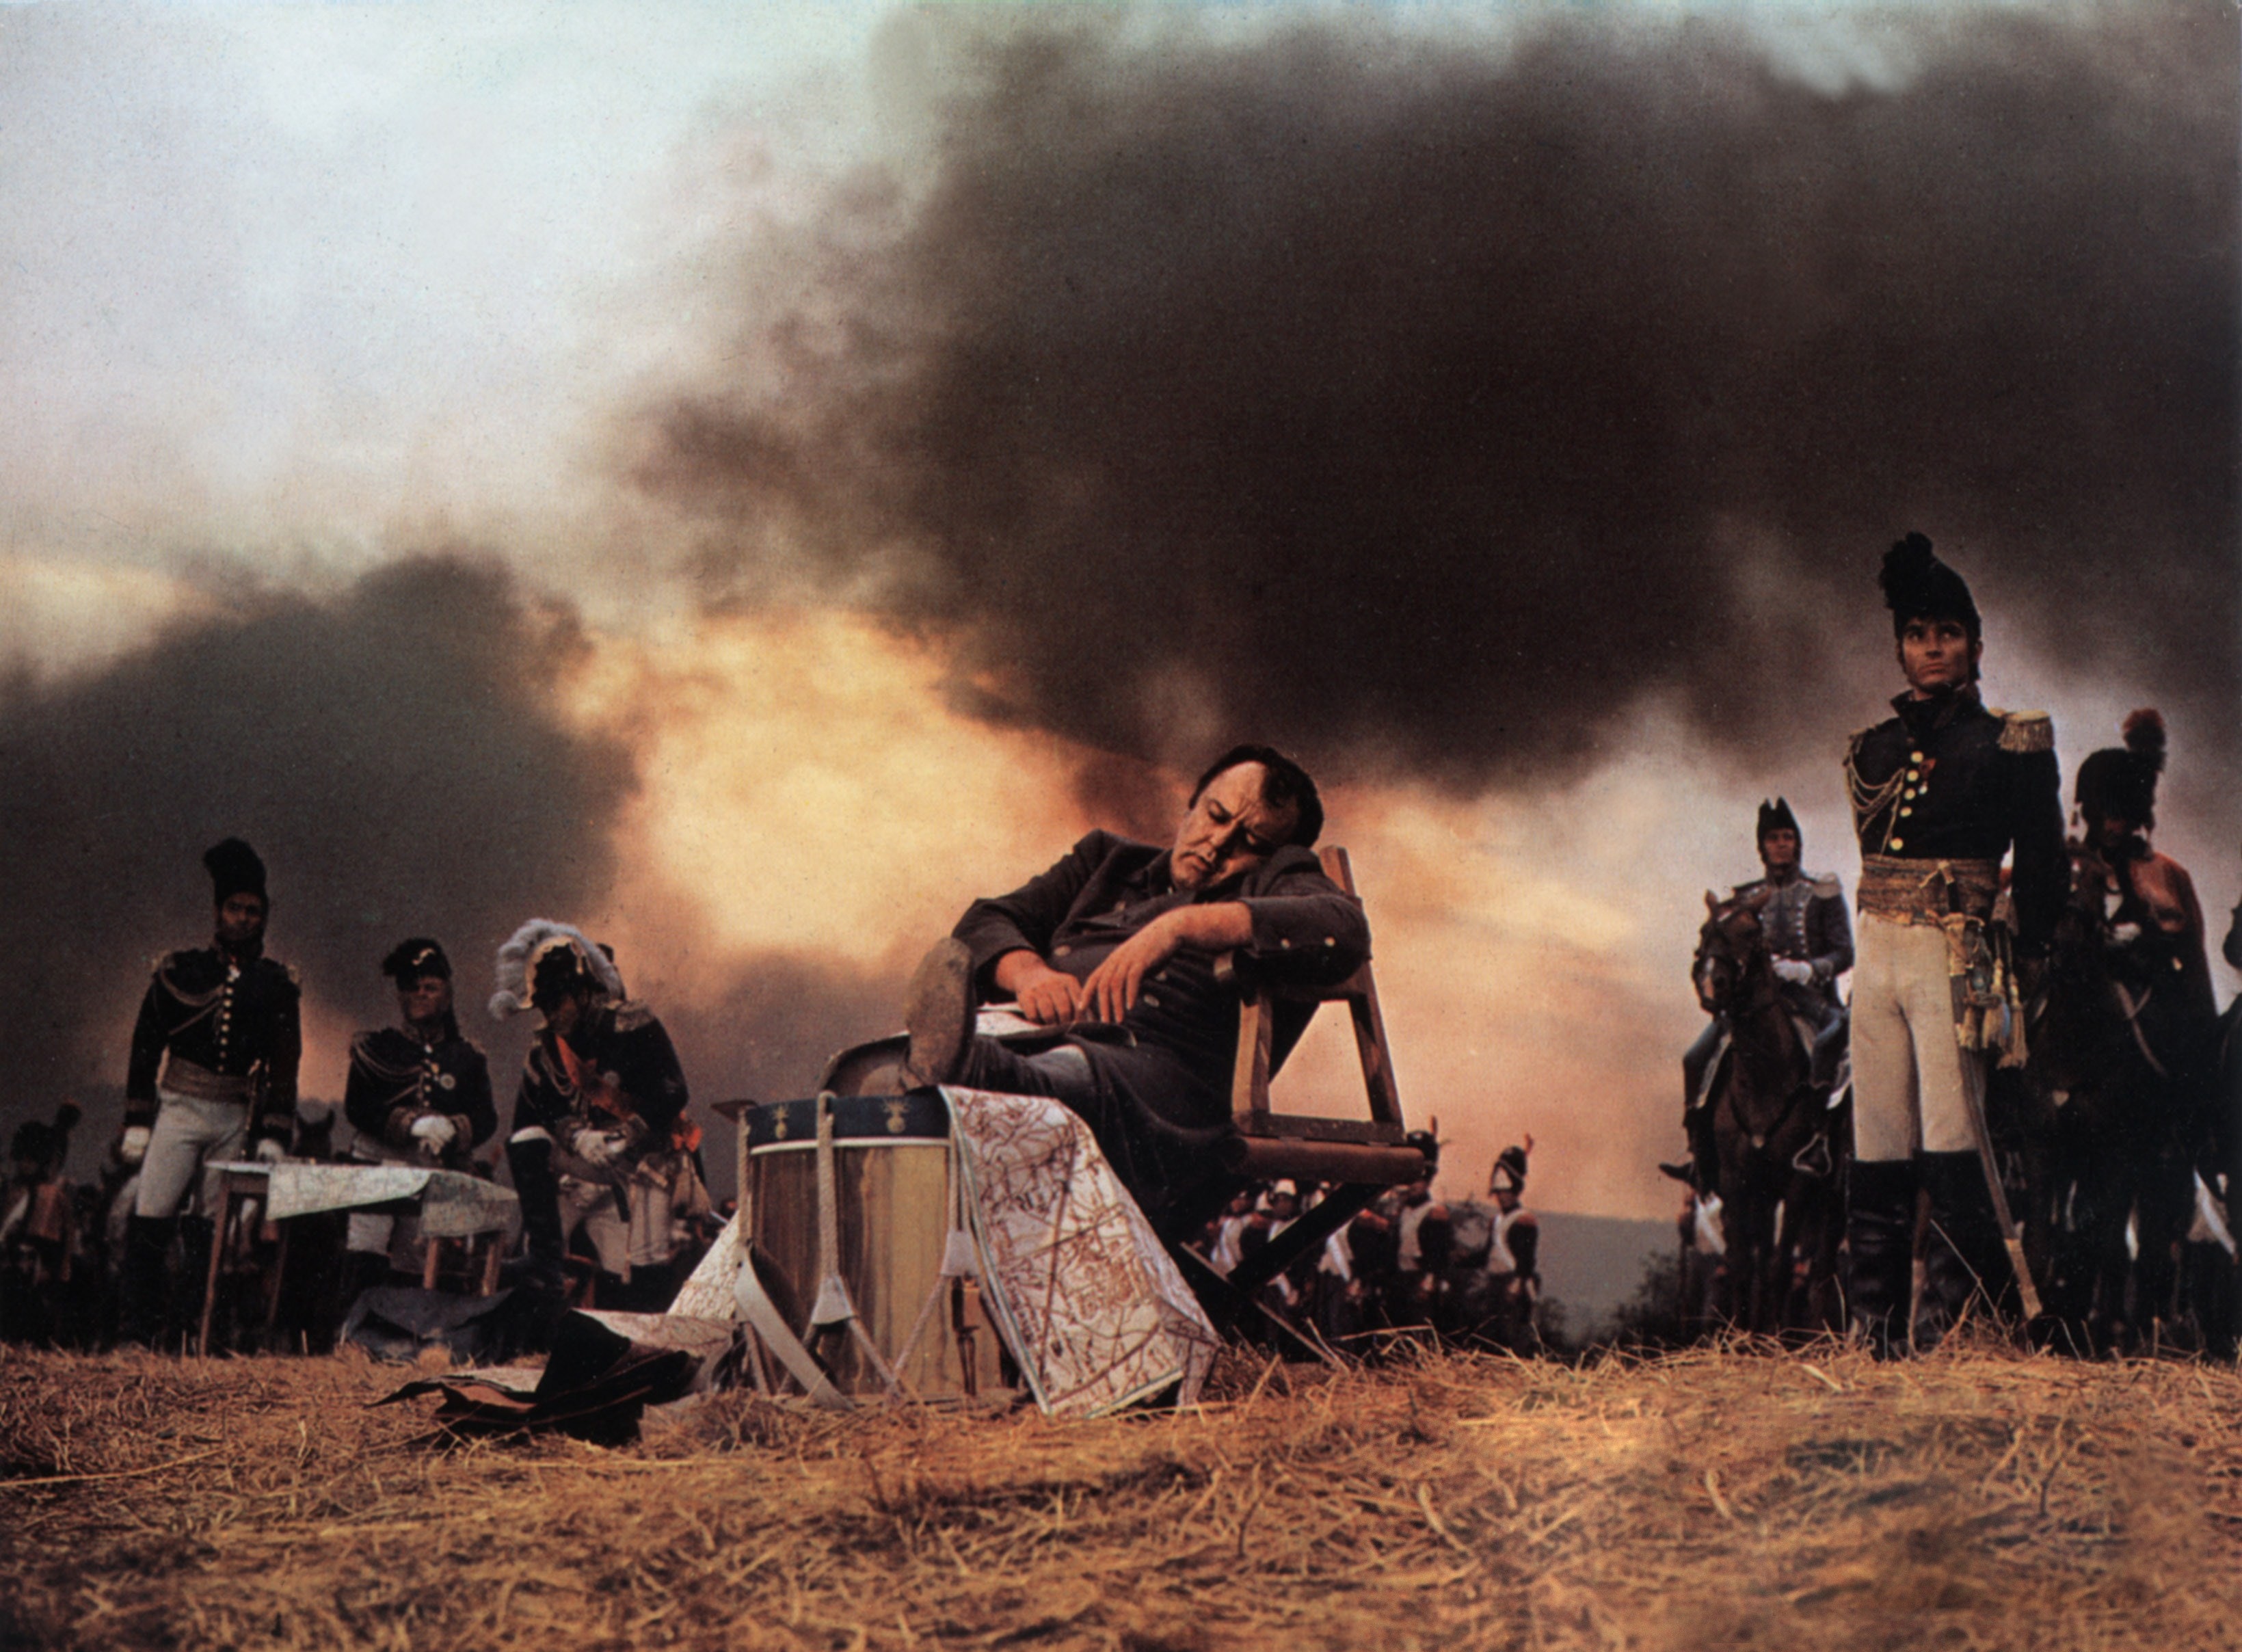 Una scena del film "Waterloo", 1970